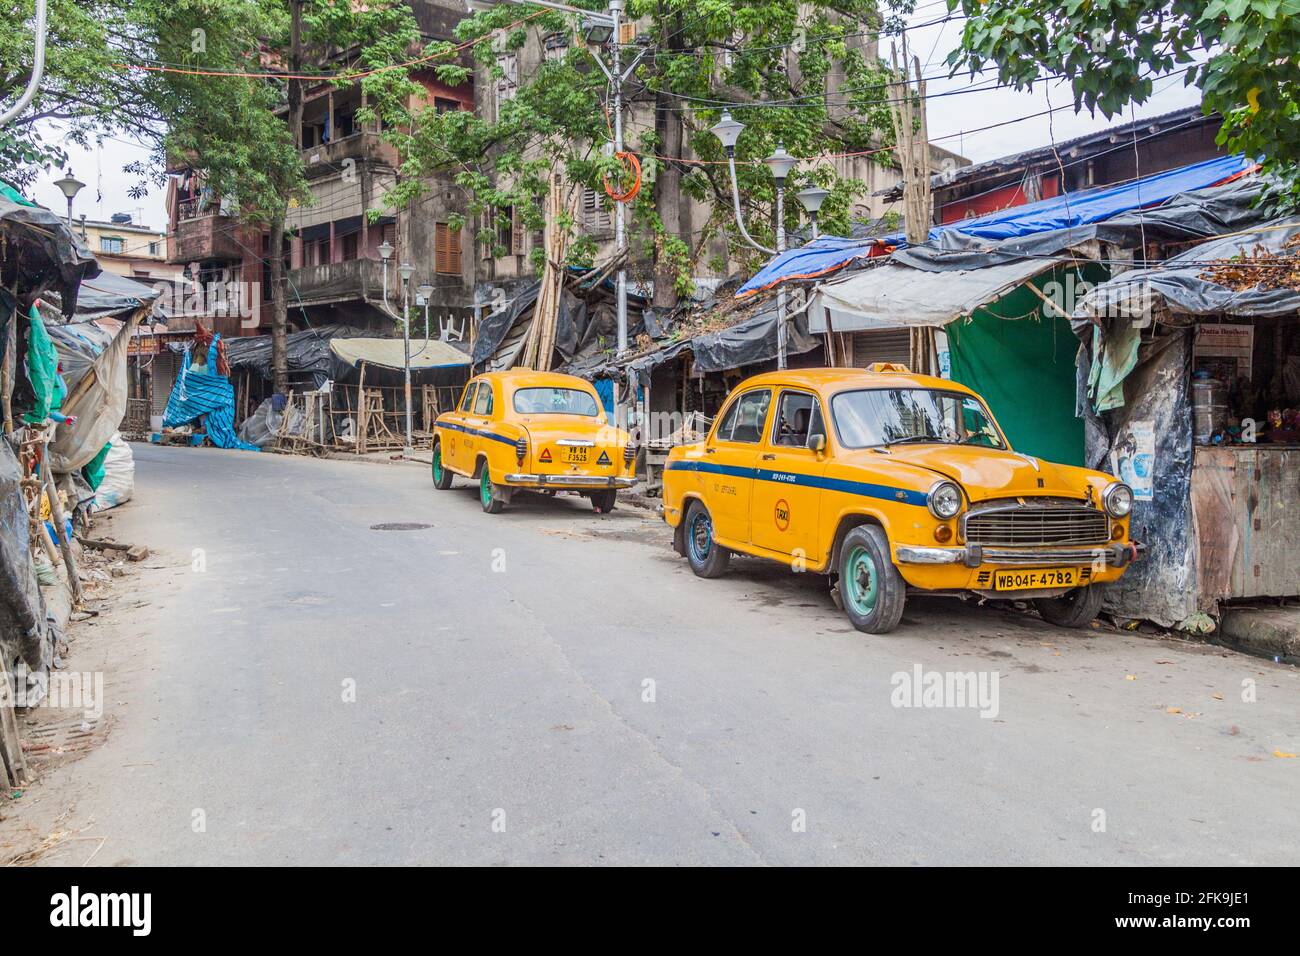 KOLKATA, INDIA - OCTOBER 31, 2016: View of yellow Hindustan Ambassador taxis in Kolkata, India Stock Photo